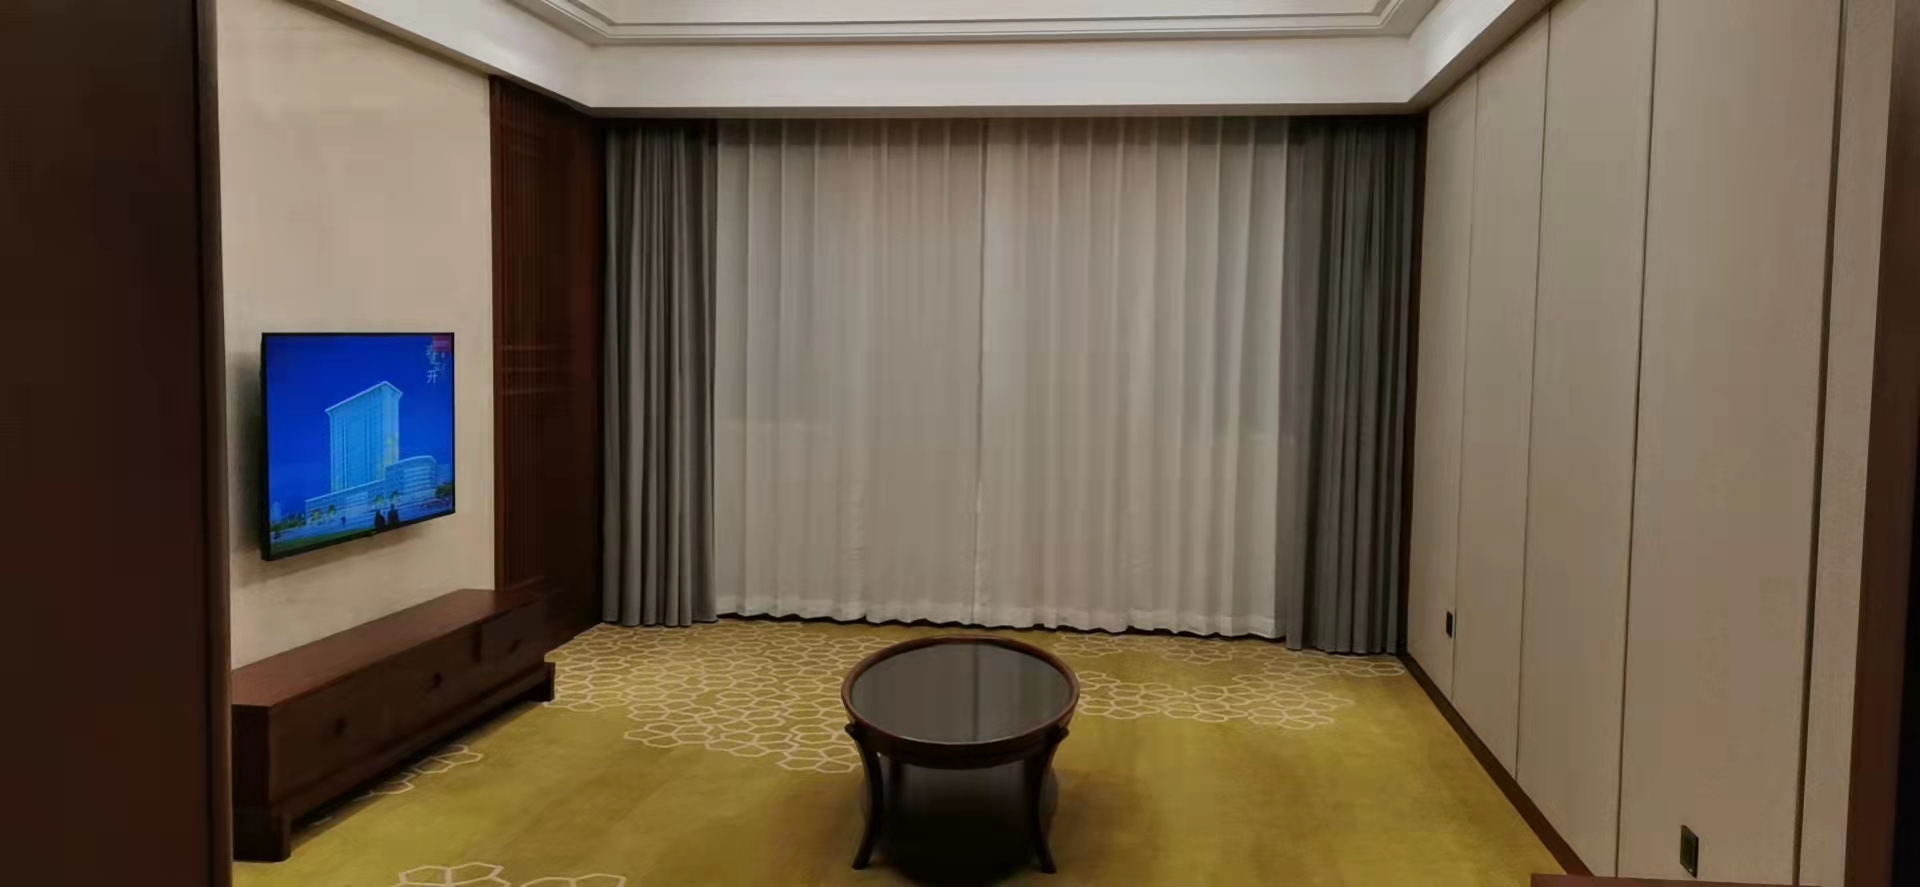 西安酒店窗簾